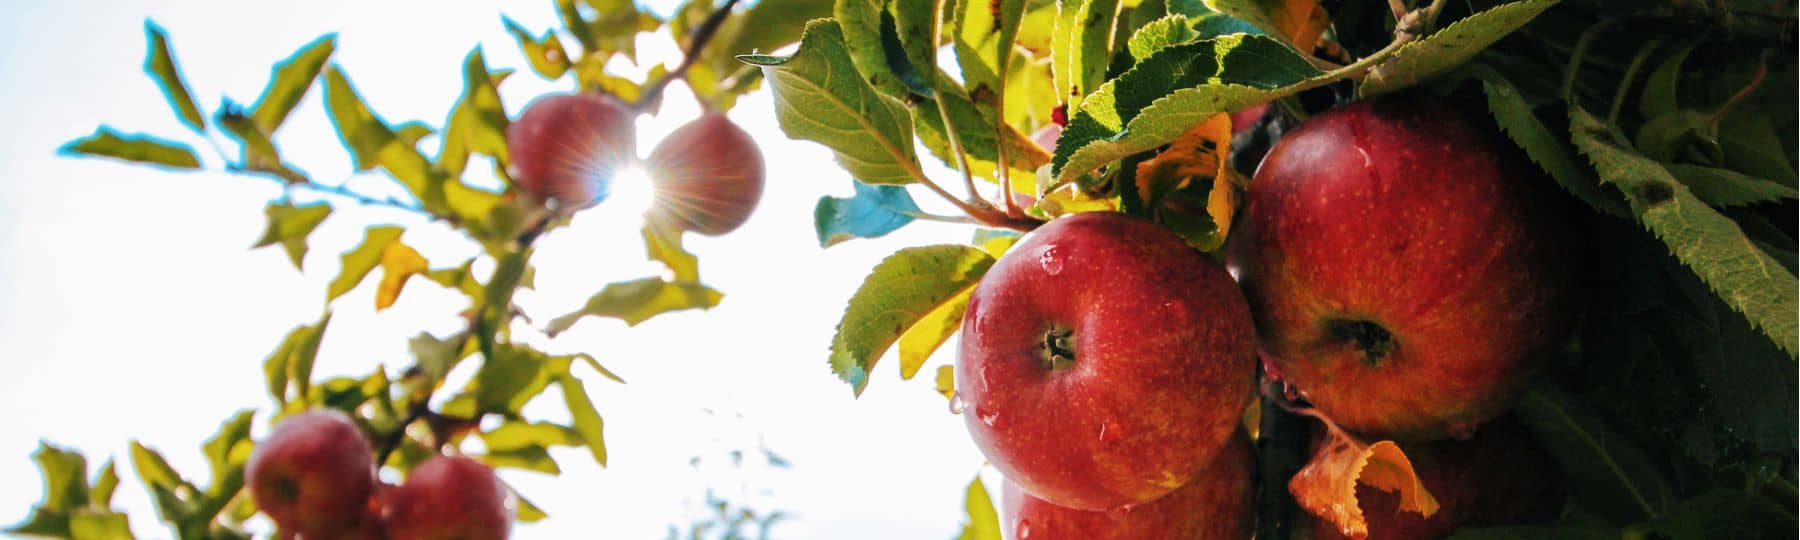 Foto's van appels die aan de takken van een appelboom hangen